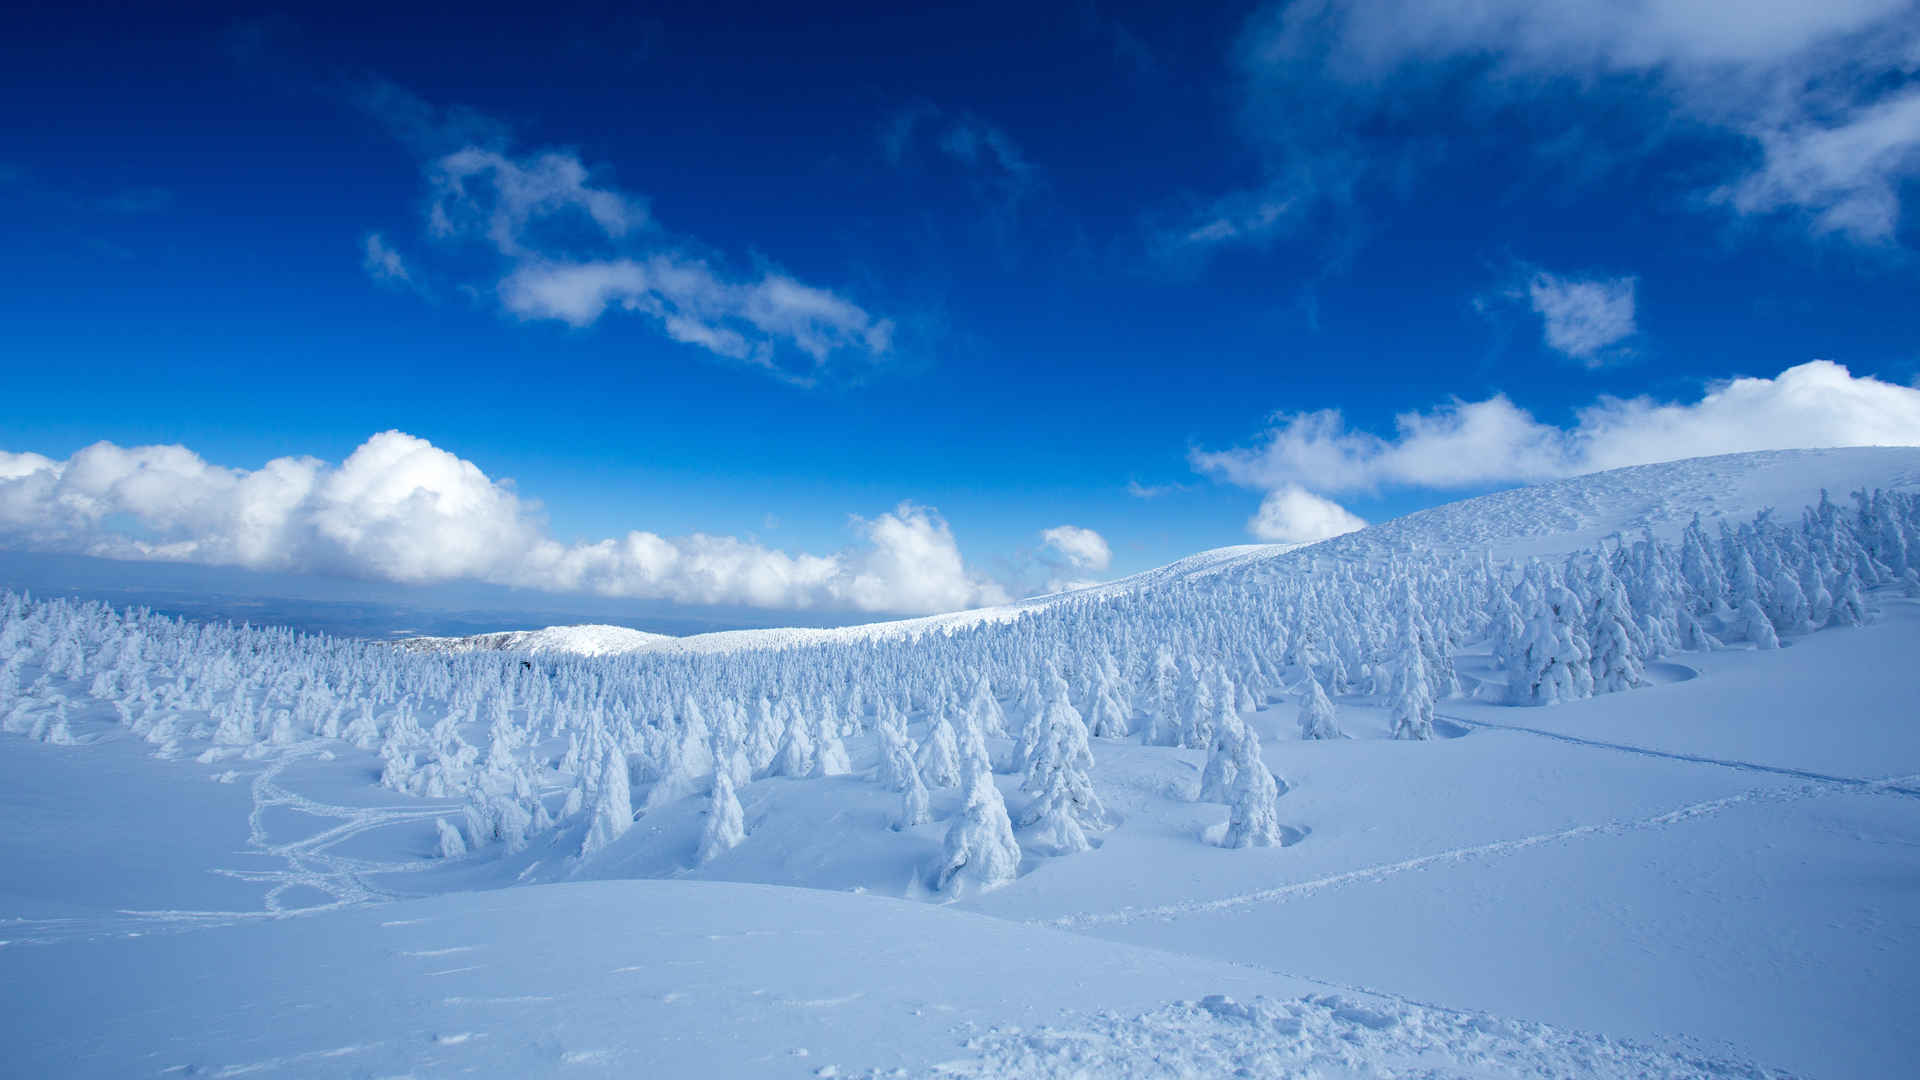 白雪覆盖的树木 雪景 蓝天壁纸